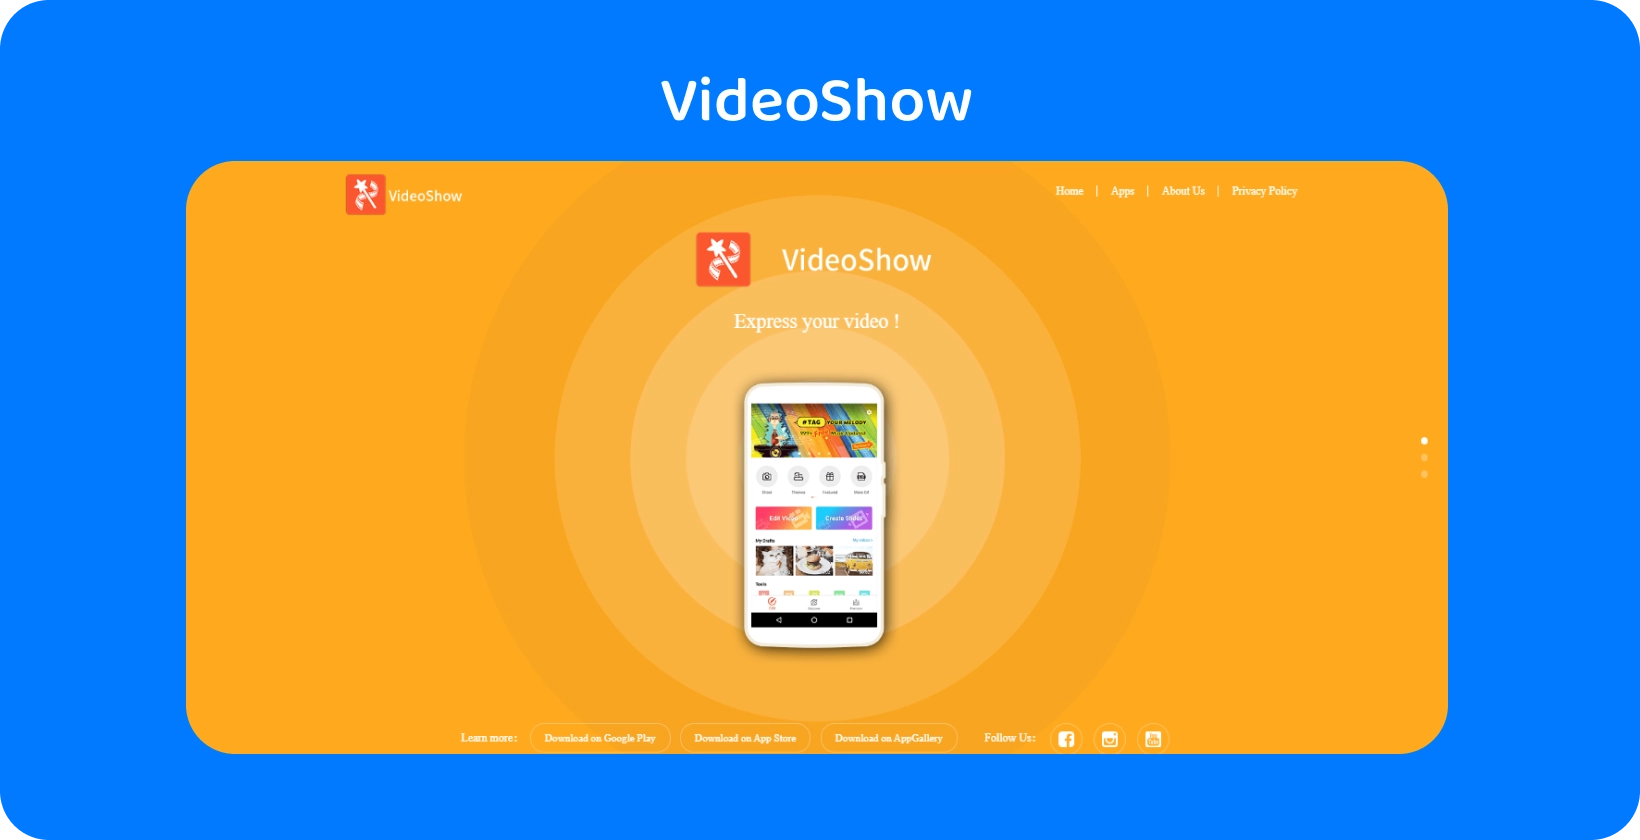 VideoShow واجهة التطبيق على الشاشة ، مما يوفر أدوات وميزات سهلة لتحرير الفيديو على خلفية برتقالية نابضة بالحياة.